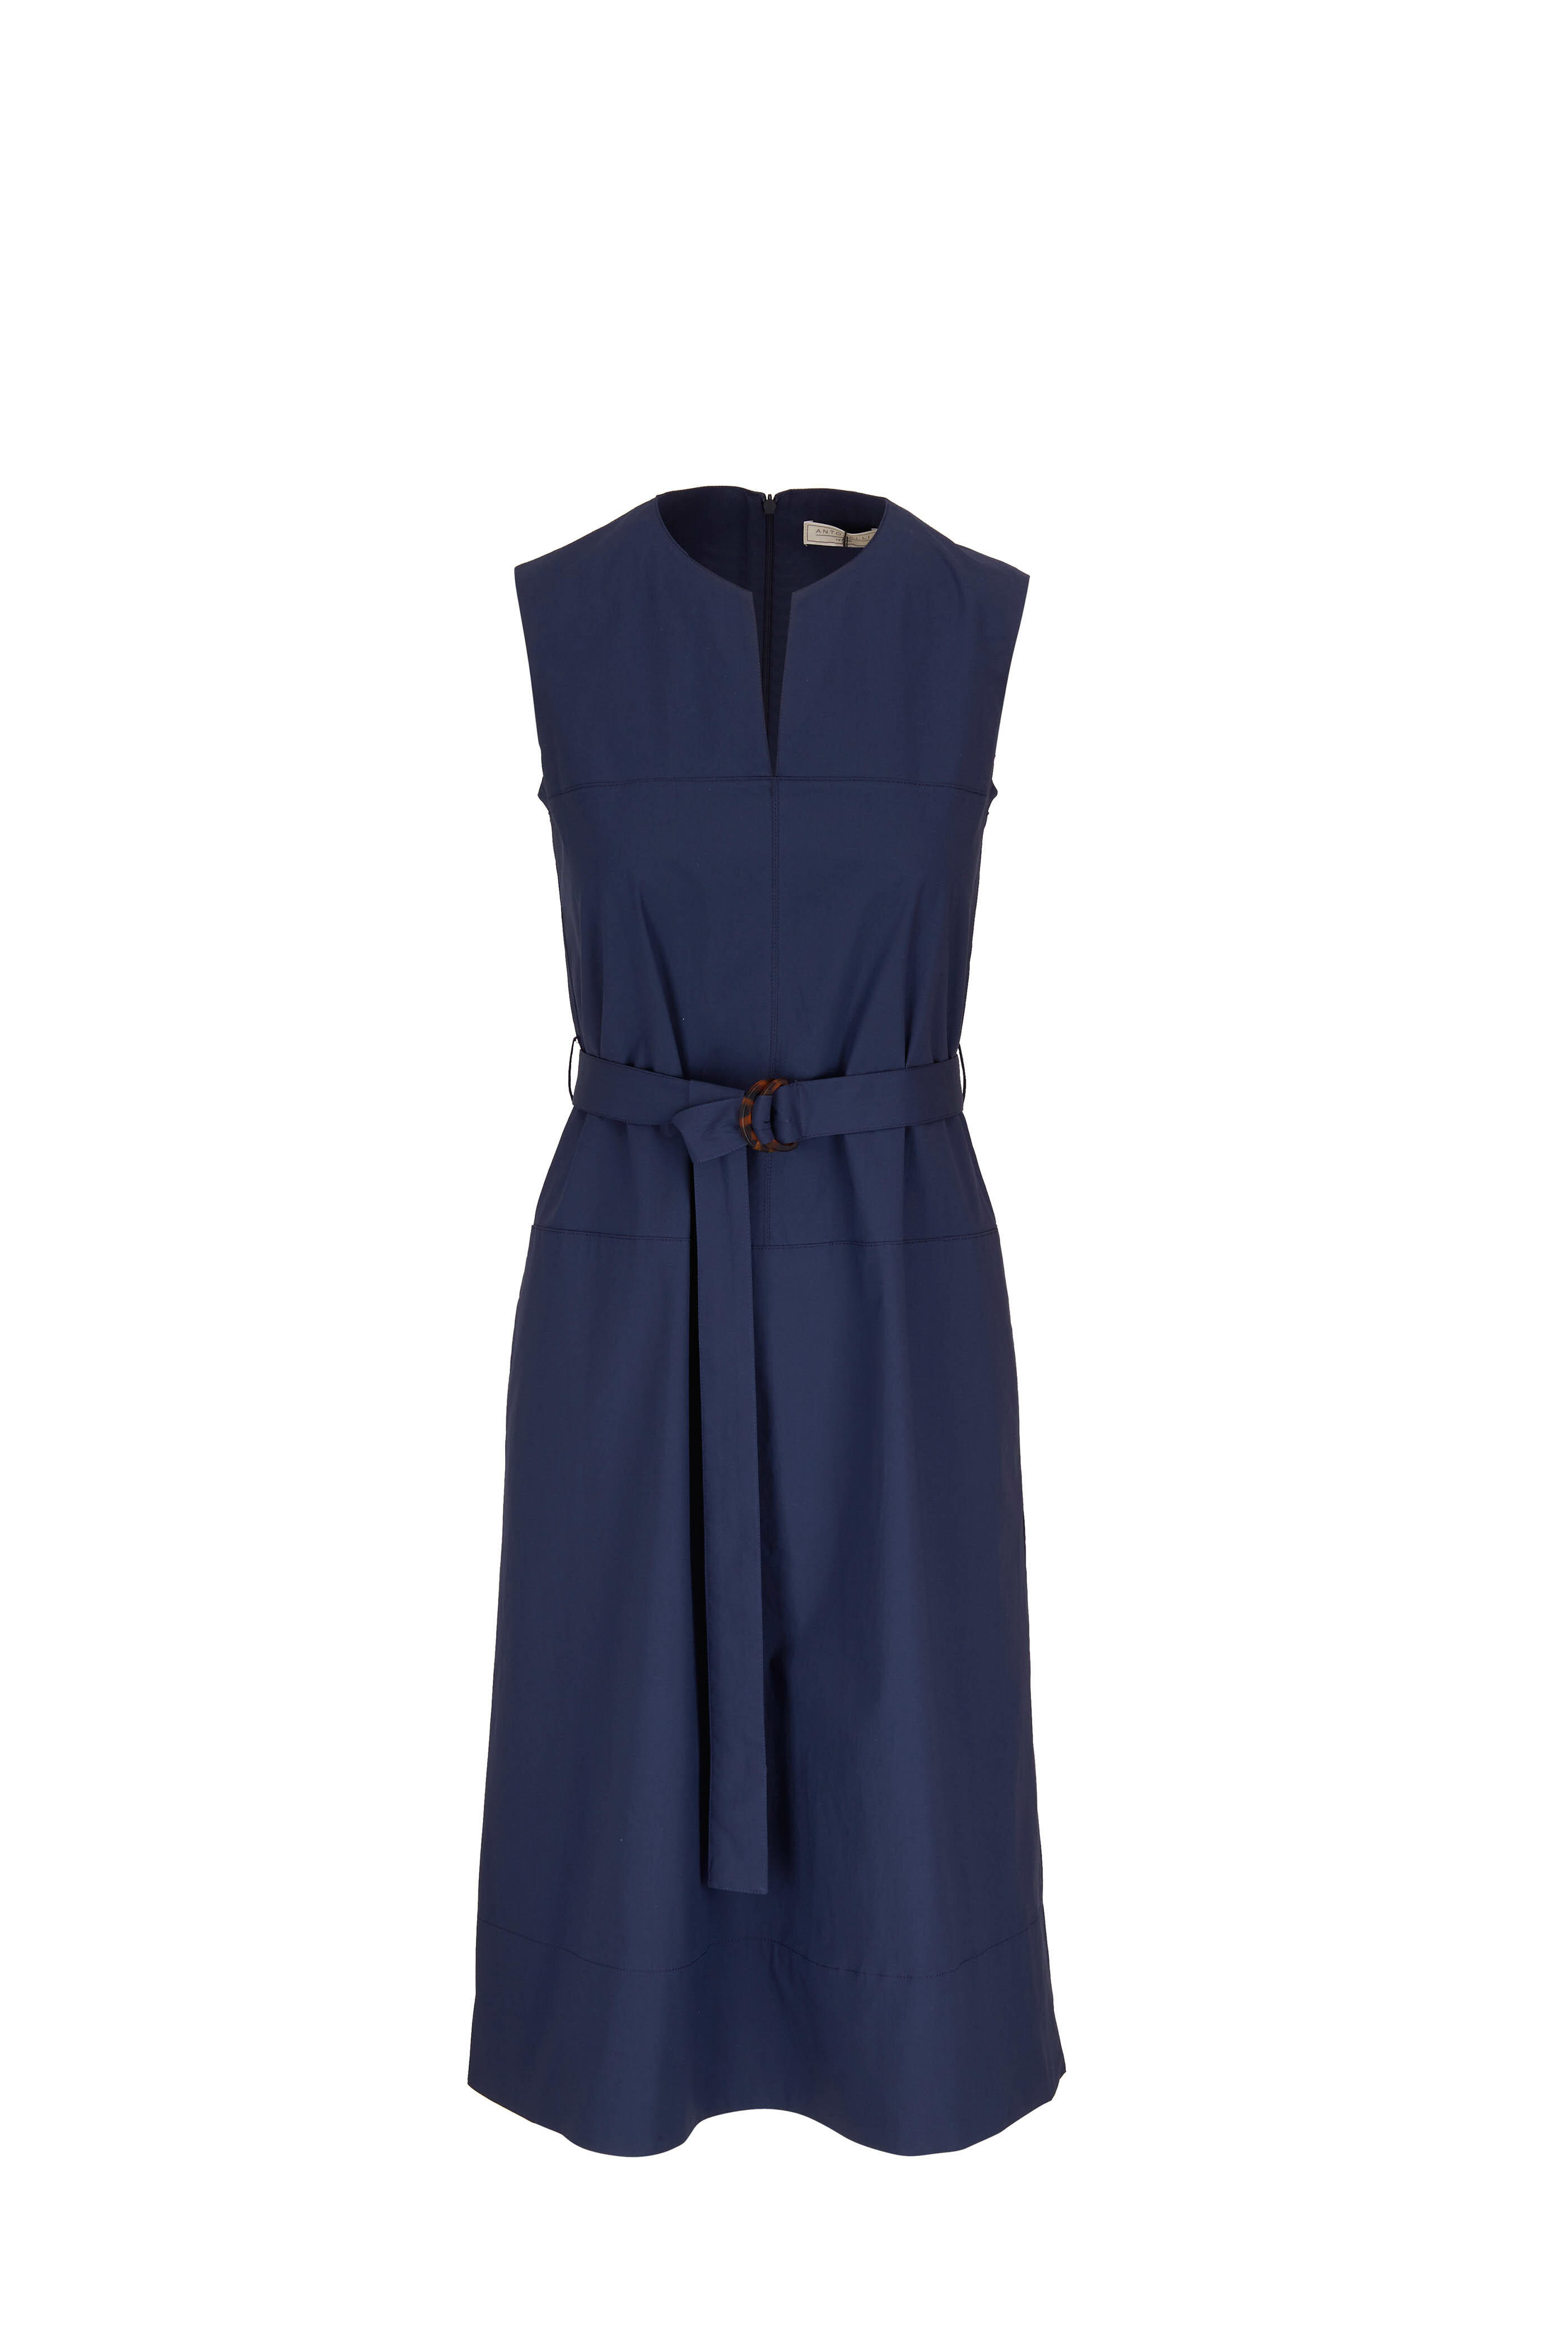 Antonelli - Megan Navy Blue Split V-Neck Dress | Mitchell Stores